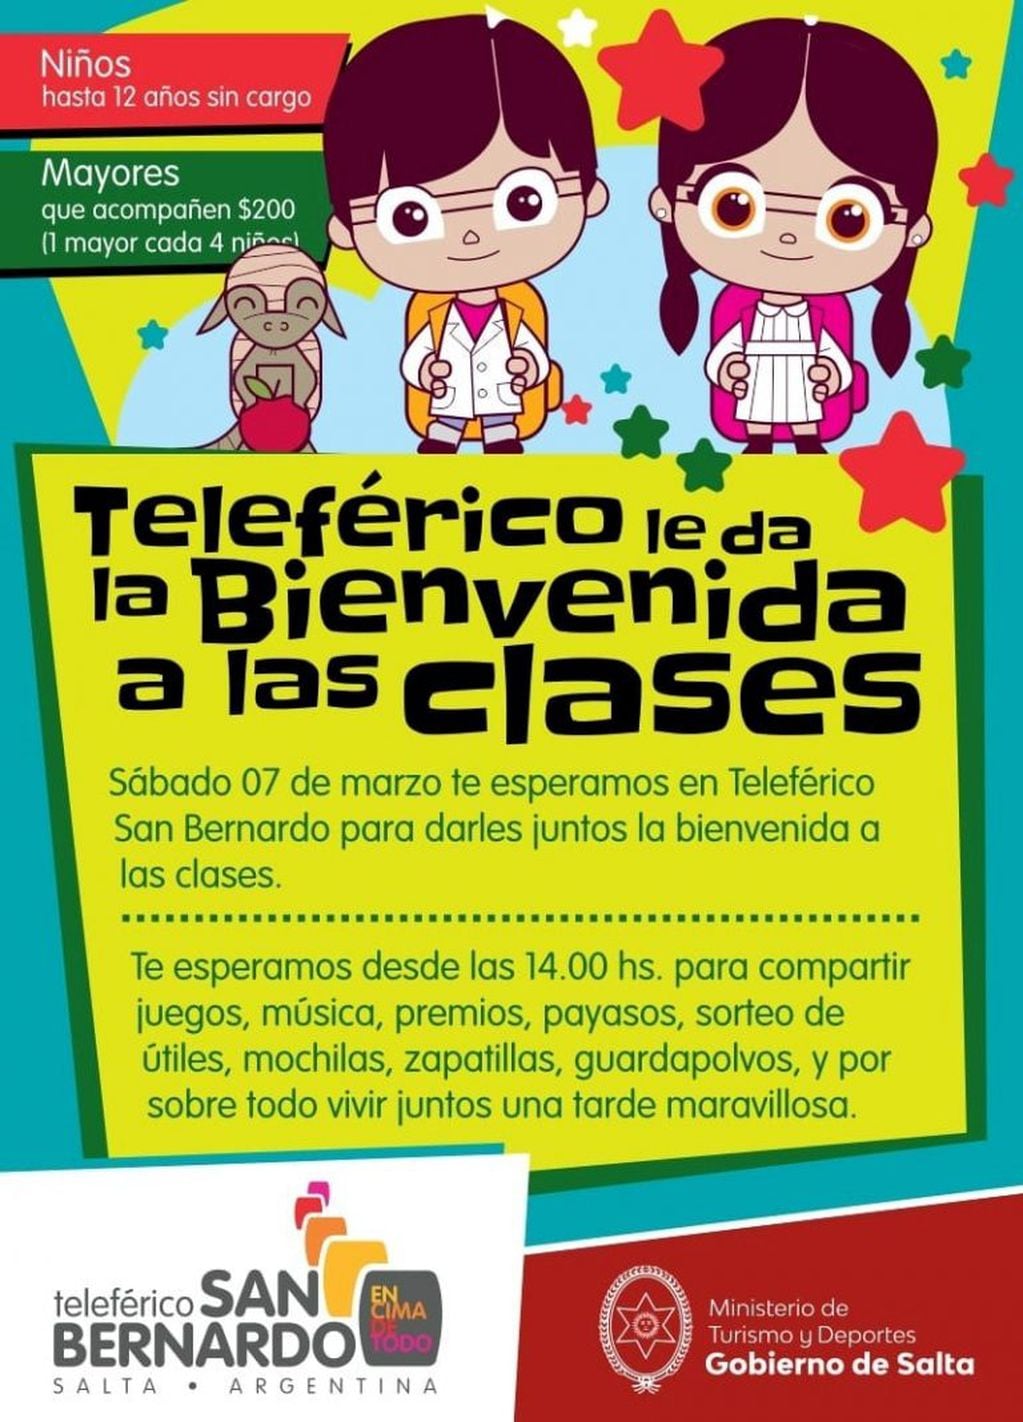 El Teleférico le da la bienvenida a las clases (Facebook Teleférico San Bernardo)